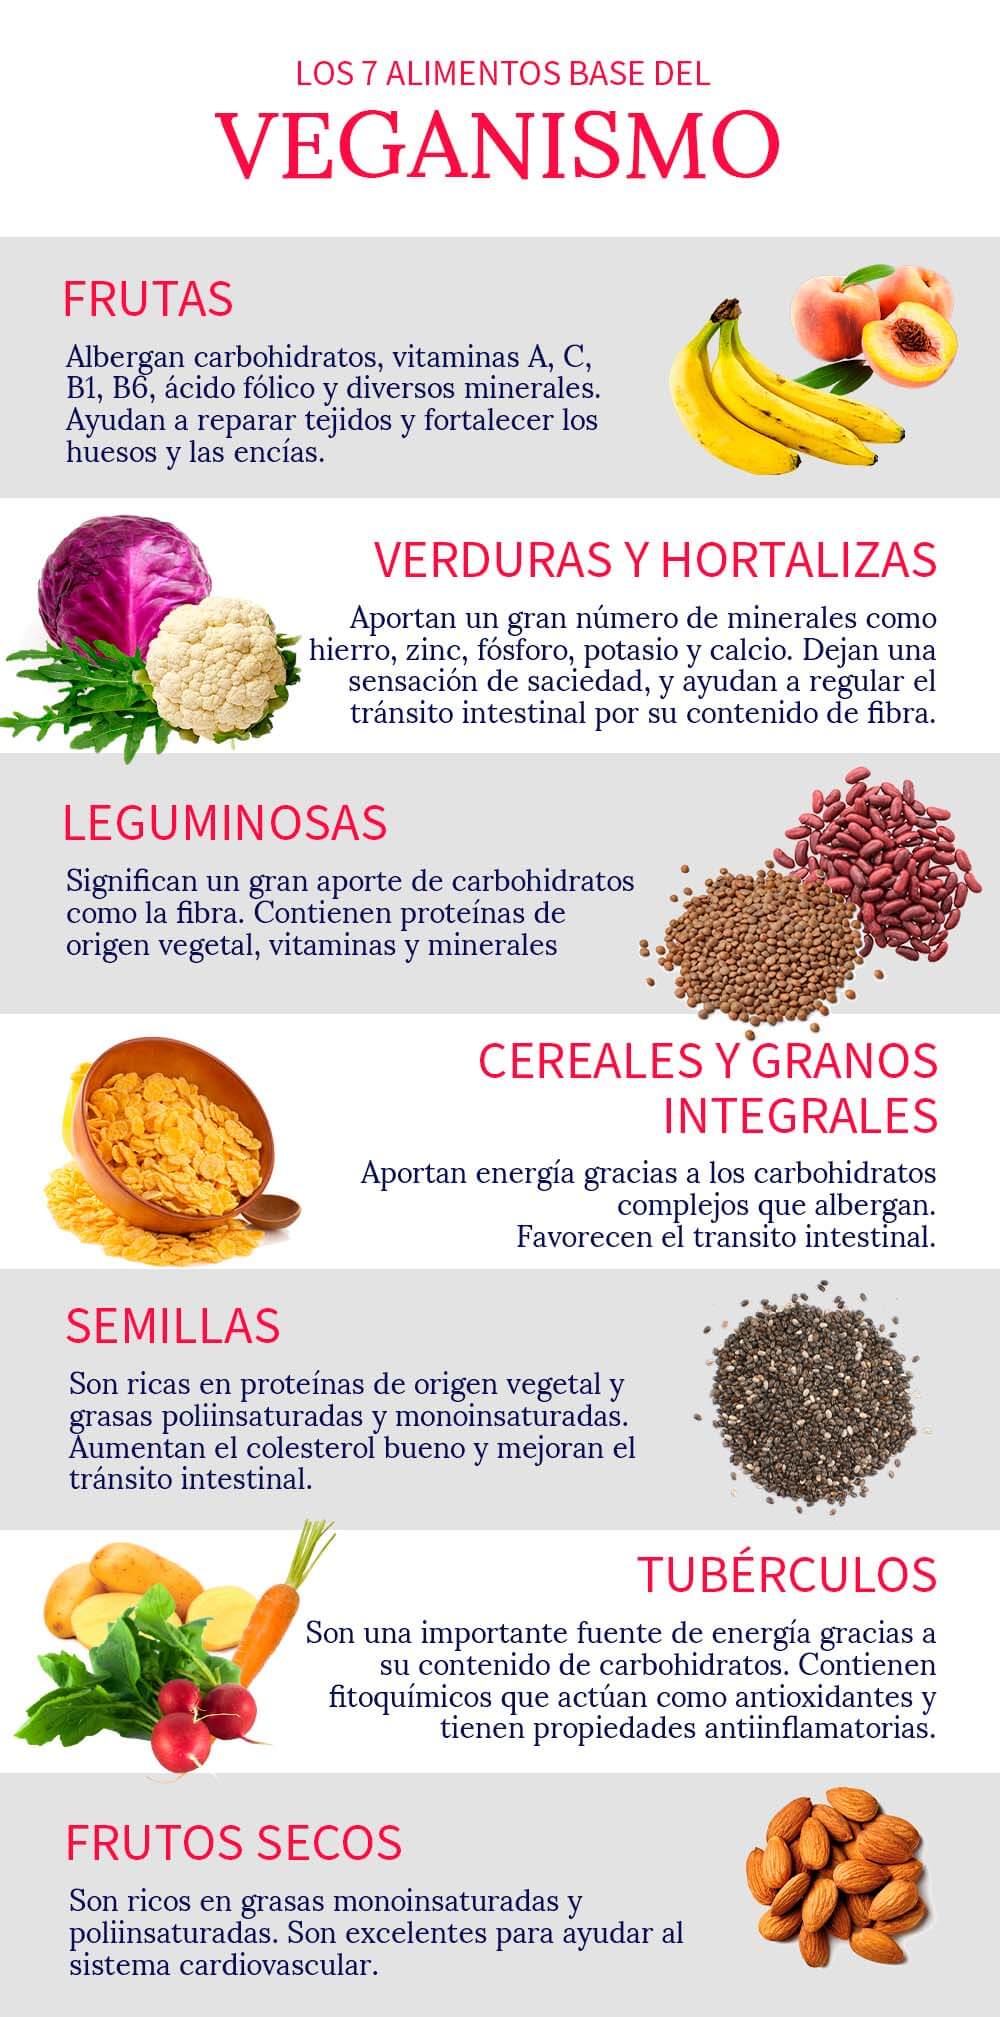 Vitamina B9 o ácido fólico  Sociedad Española de Dietética y Ciencias de  la Alimentación (S.E.D.C.A.)